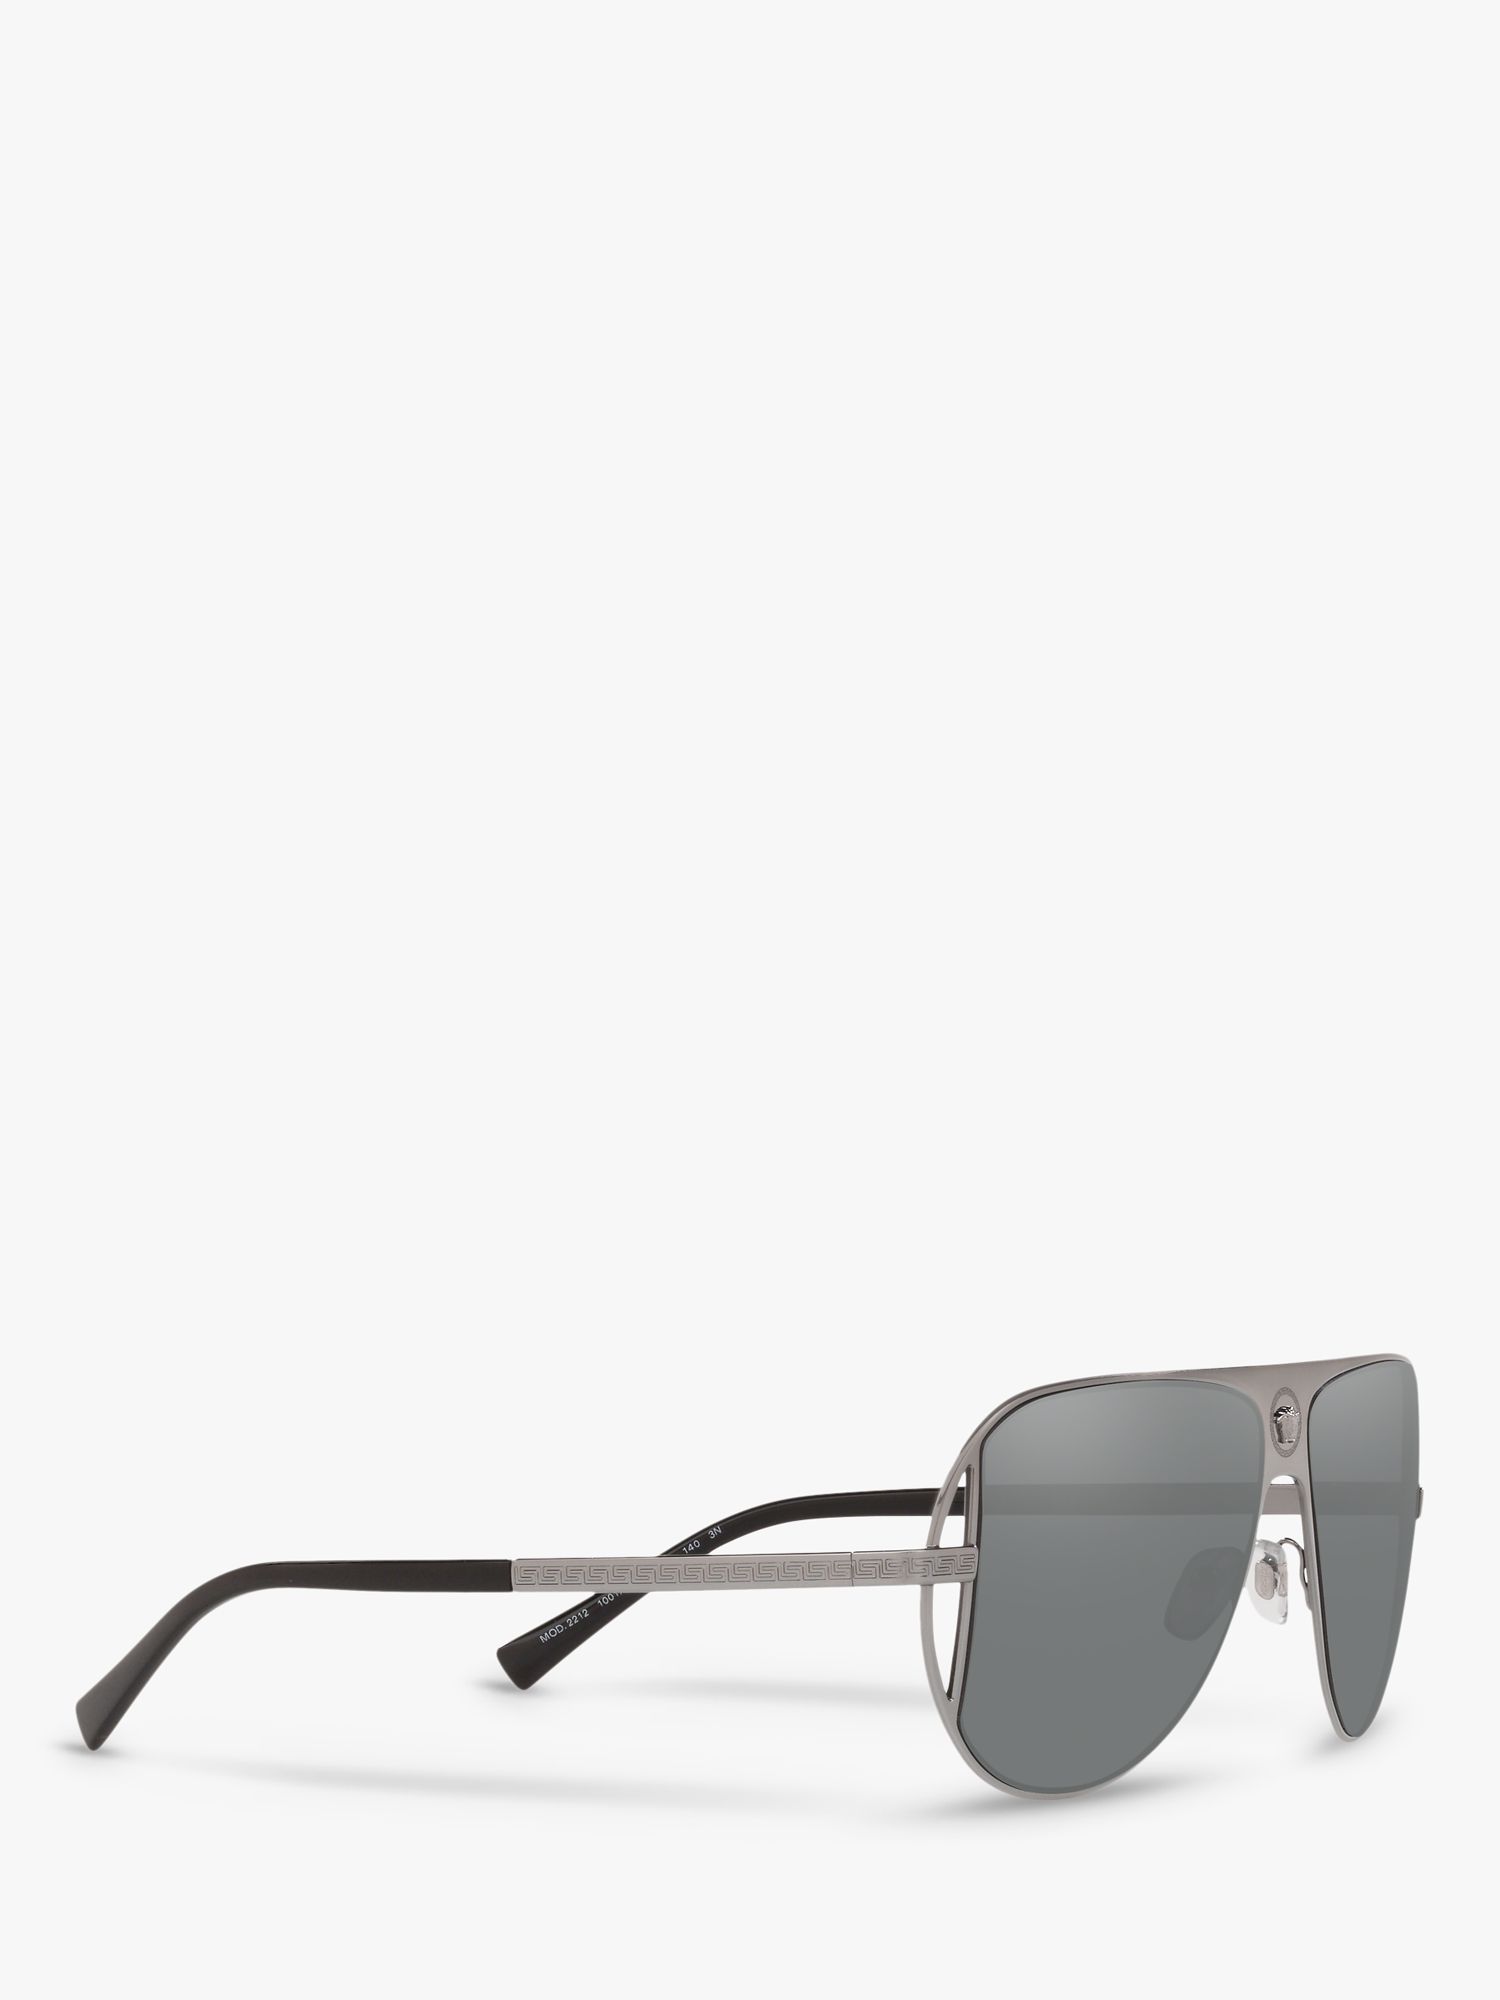 Buy Versace VE2212 Men's Aviator Sunglasses Online at johnlewis.com